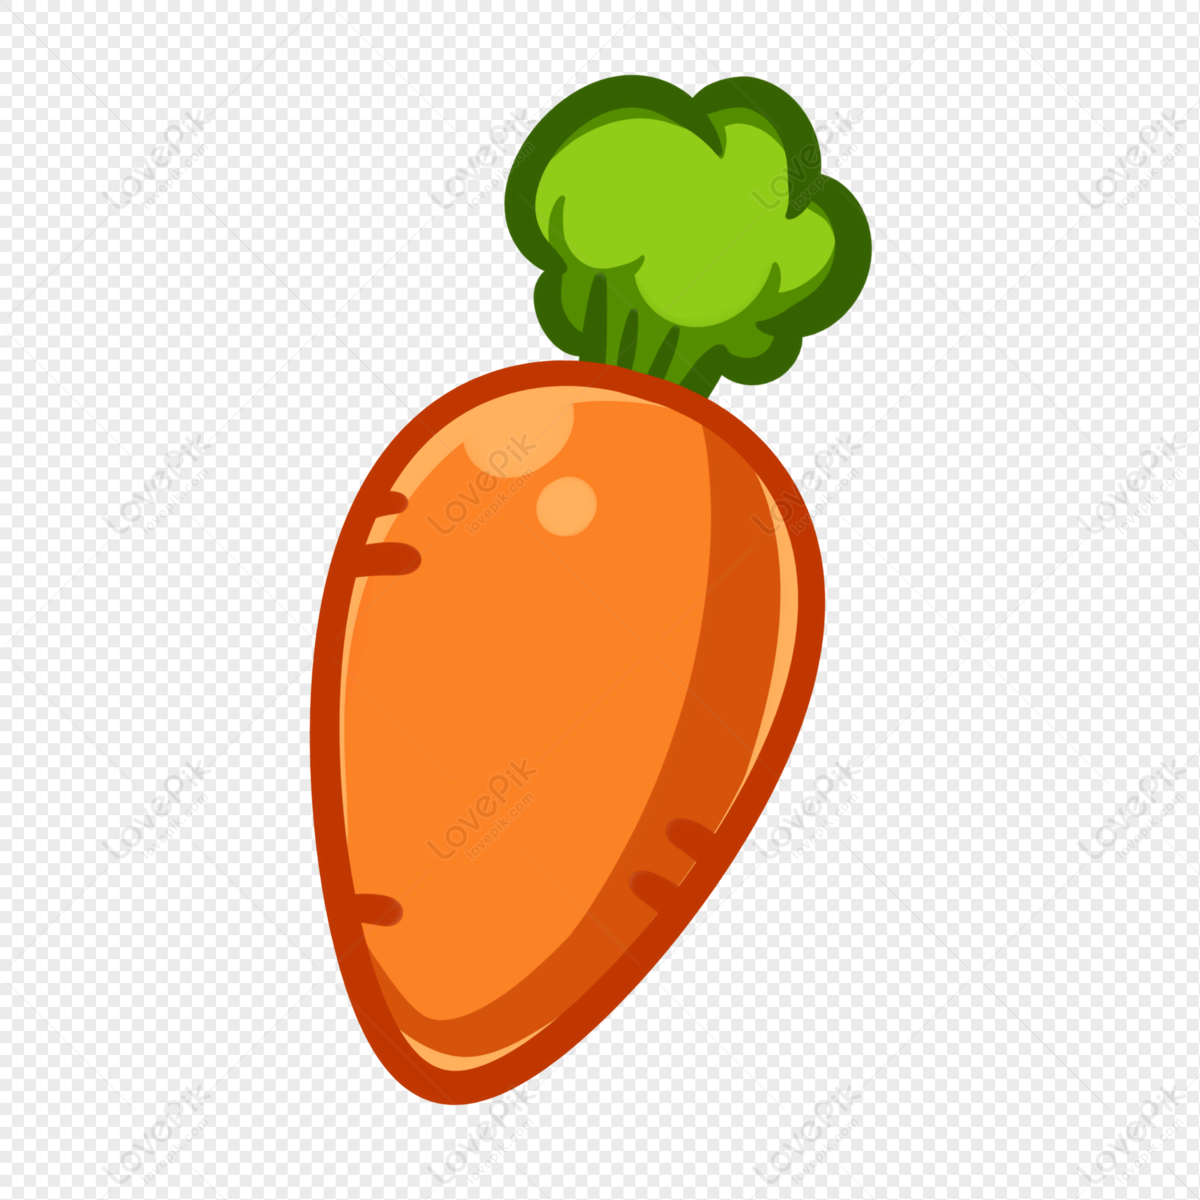 Cà rốt PNG: Hãy khám phá những hình ảnh cà rốt đẹp mắt trong định dạng PNG với độ phân giải cao. Cảm nhận sự tươi sáng của những quả cà rốt tươi ngon, sẵn sàng cho mọi món ăn ngon miệng của bạn.